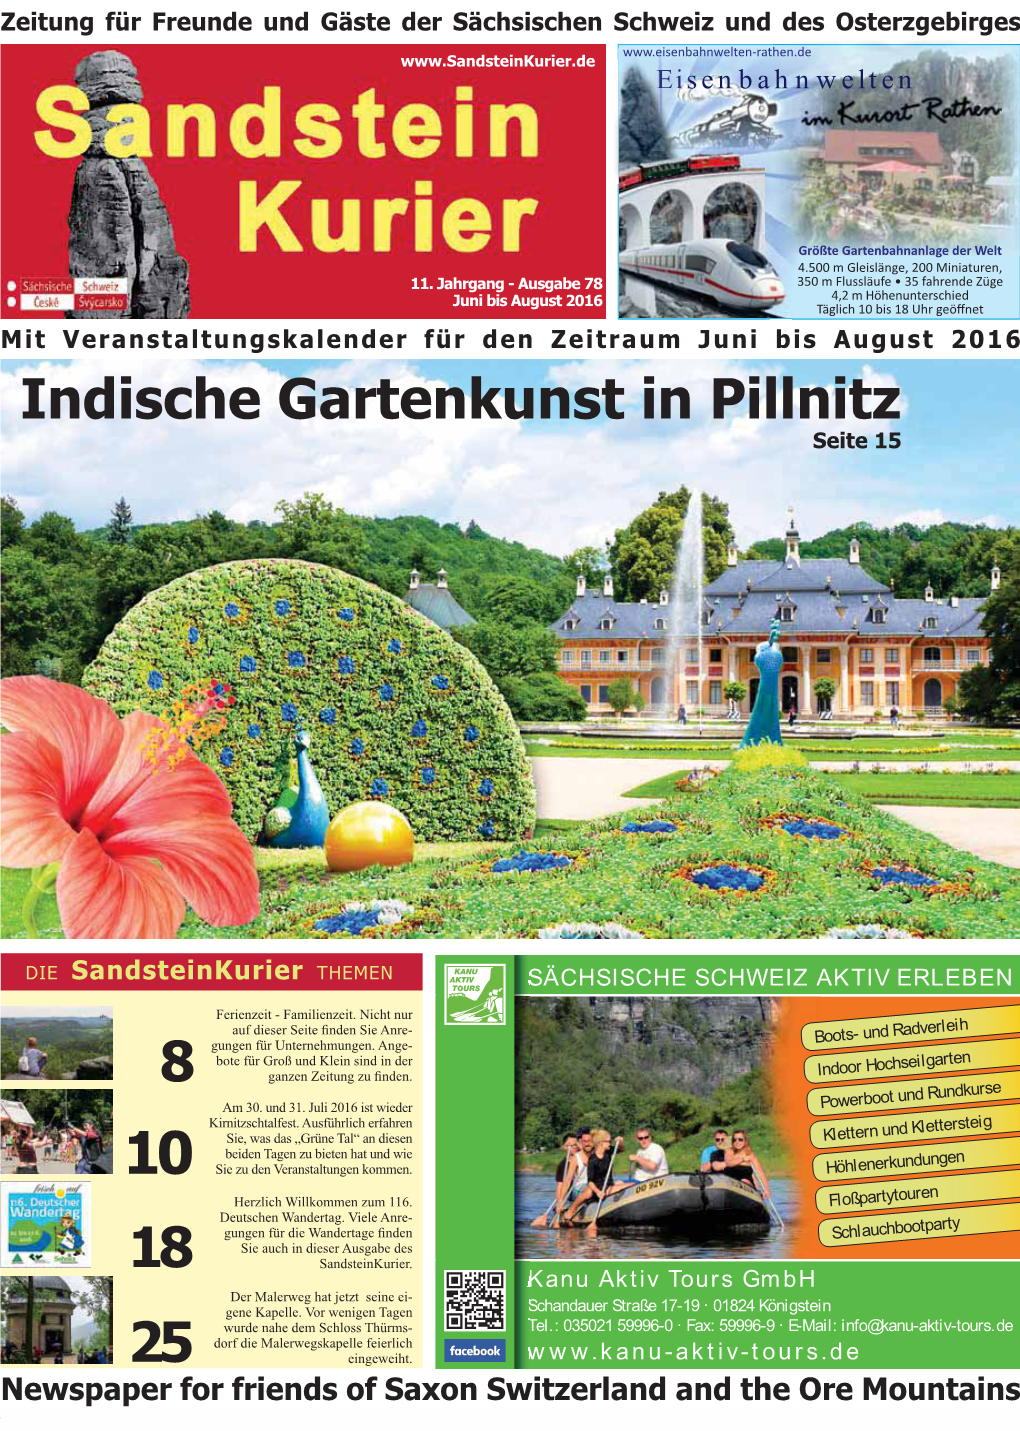 18 8 25 Indische Gartenkunst in Pillnitz